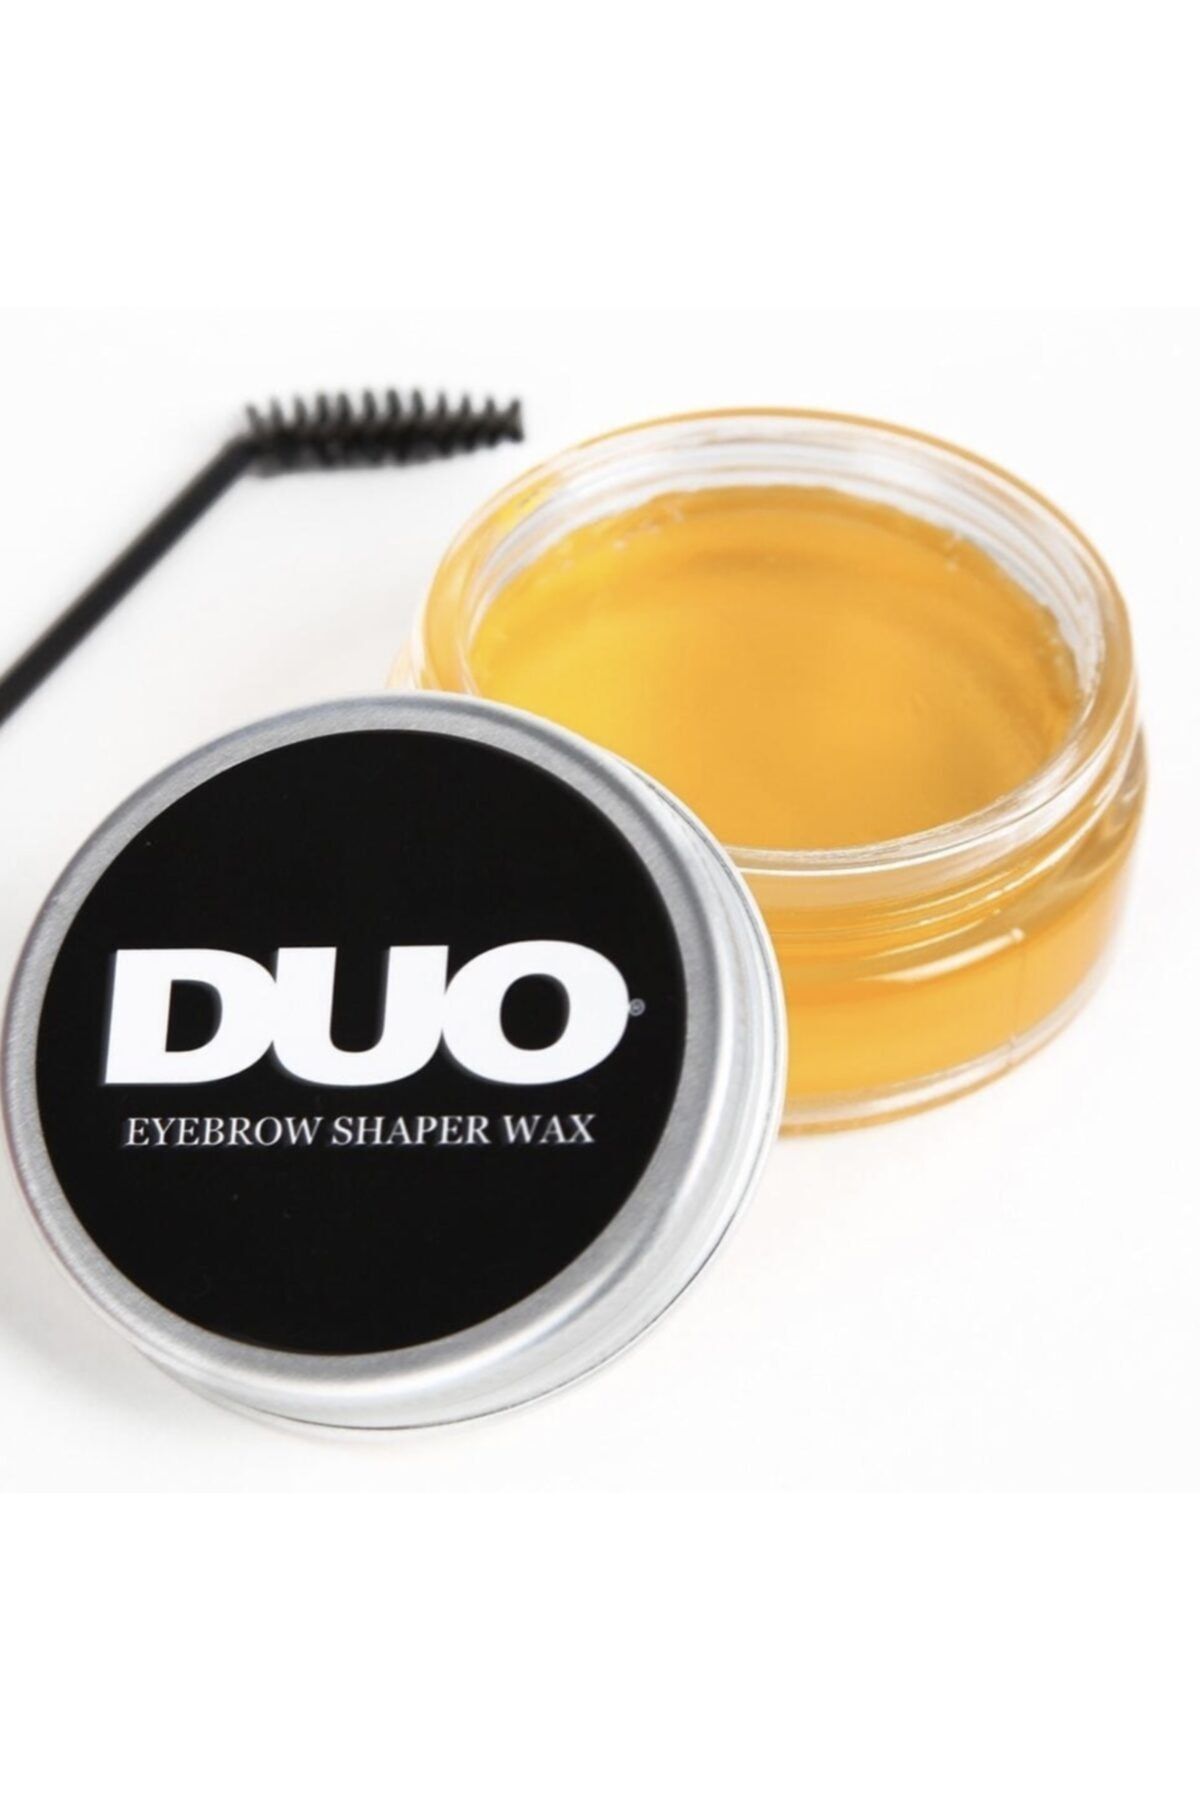 Duo Eyebrow Shaper Wax 50 ml Argan-keratin-almond Yağları -e,b Vitaminleriyle Şekillendirir Besler